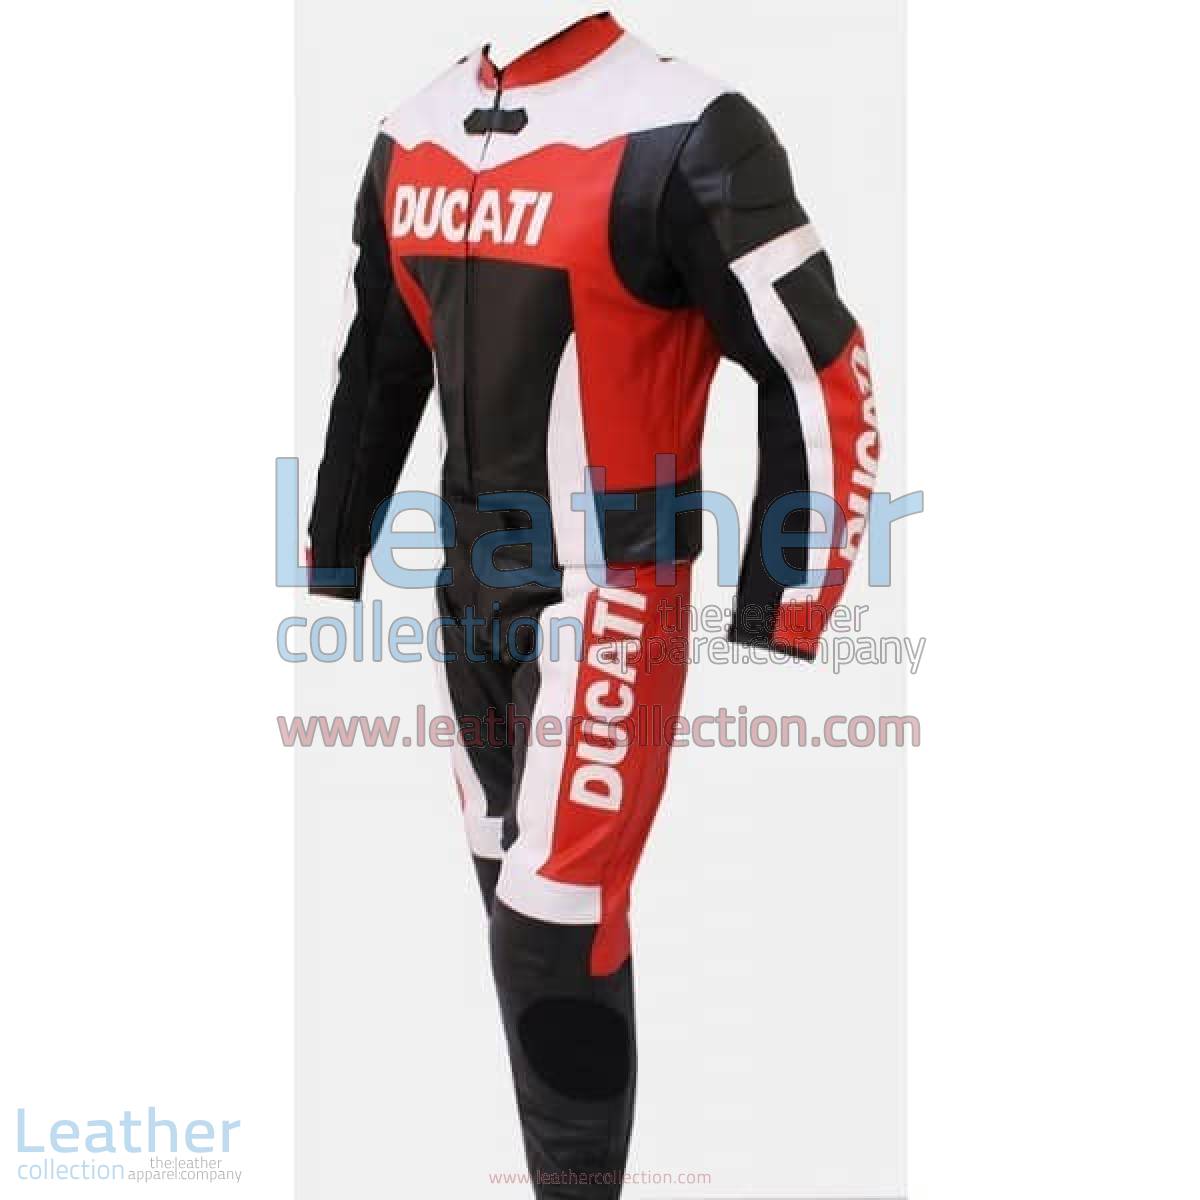 Ducati Motorbike Leather Suit | ducati leather suit,ducati leather